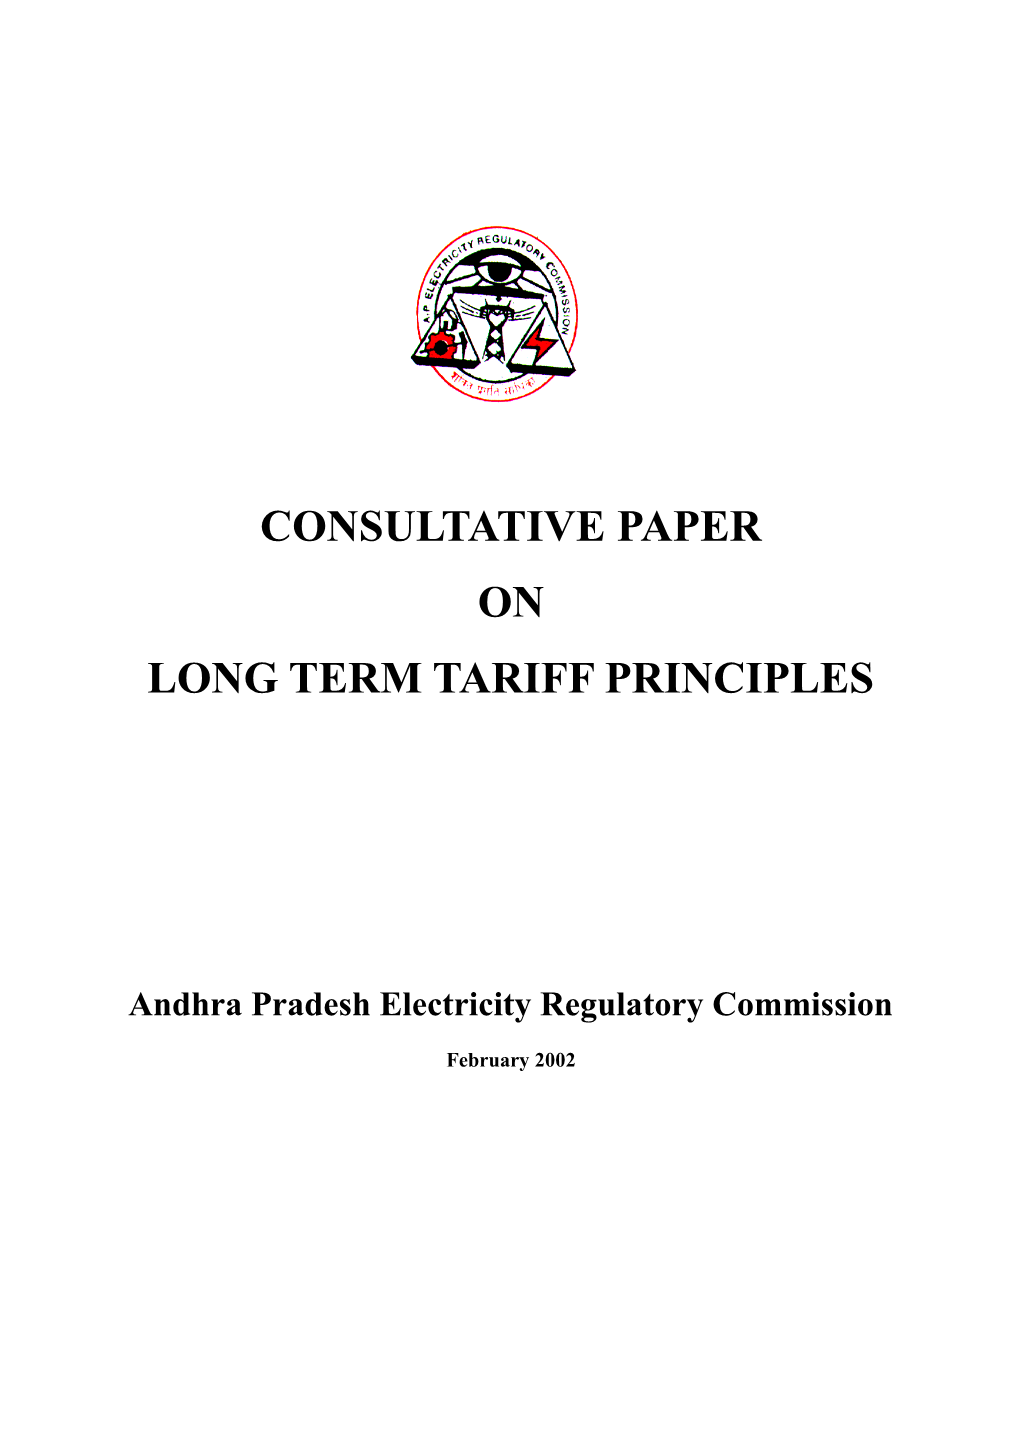 APERC Consultative Paper